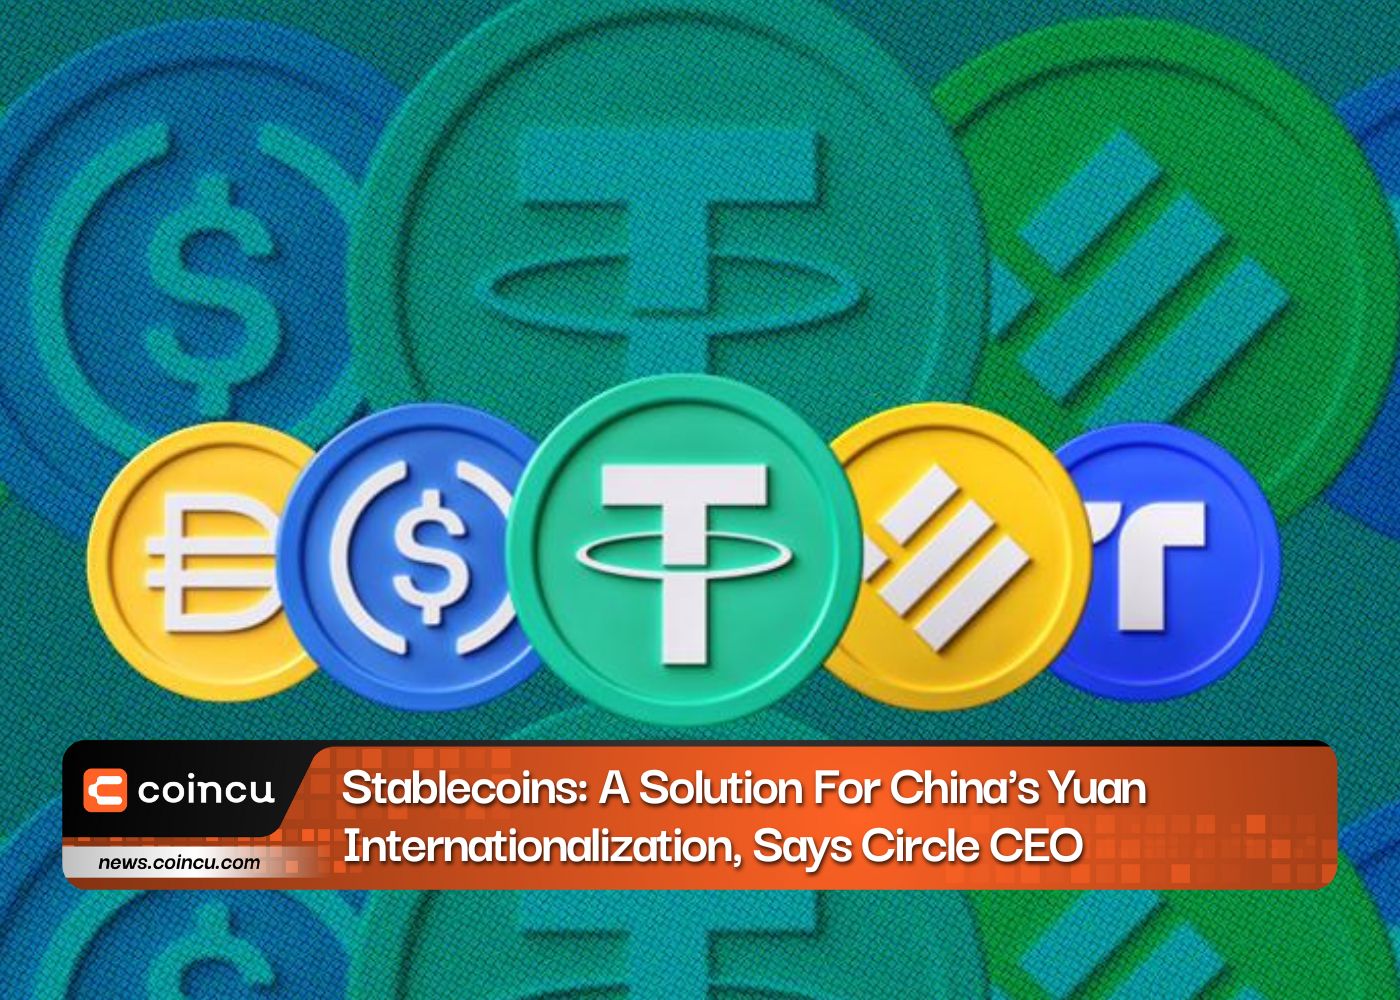 Circle CEO'su: Stablecoin'ler: Çin'in Yuan'ın Uluslararasılaşması İçin Bir Çözüm